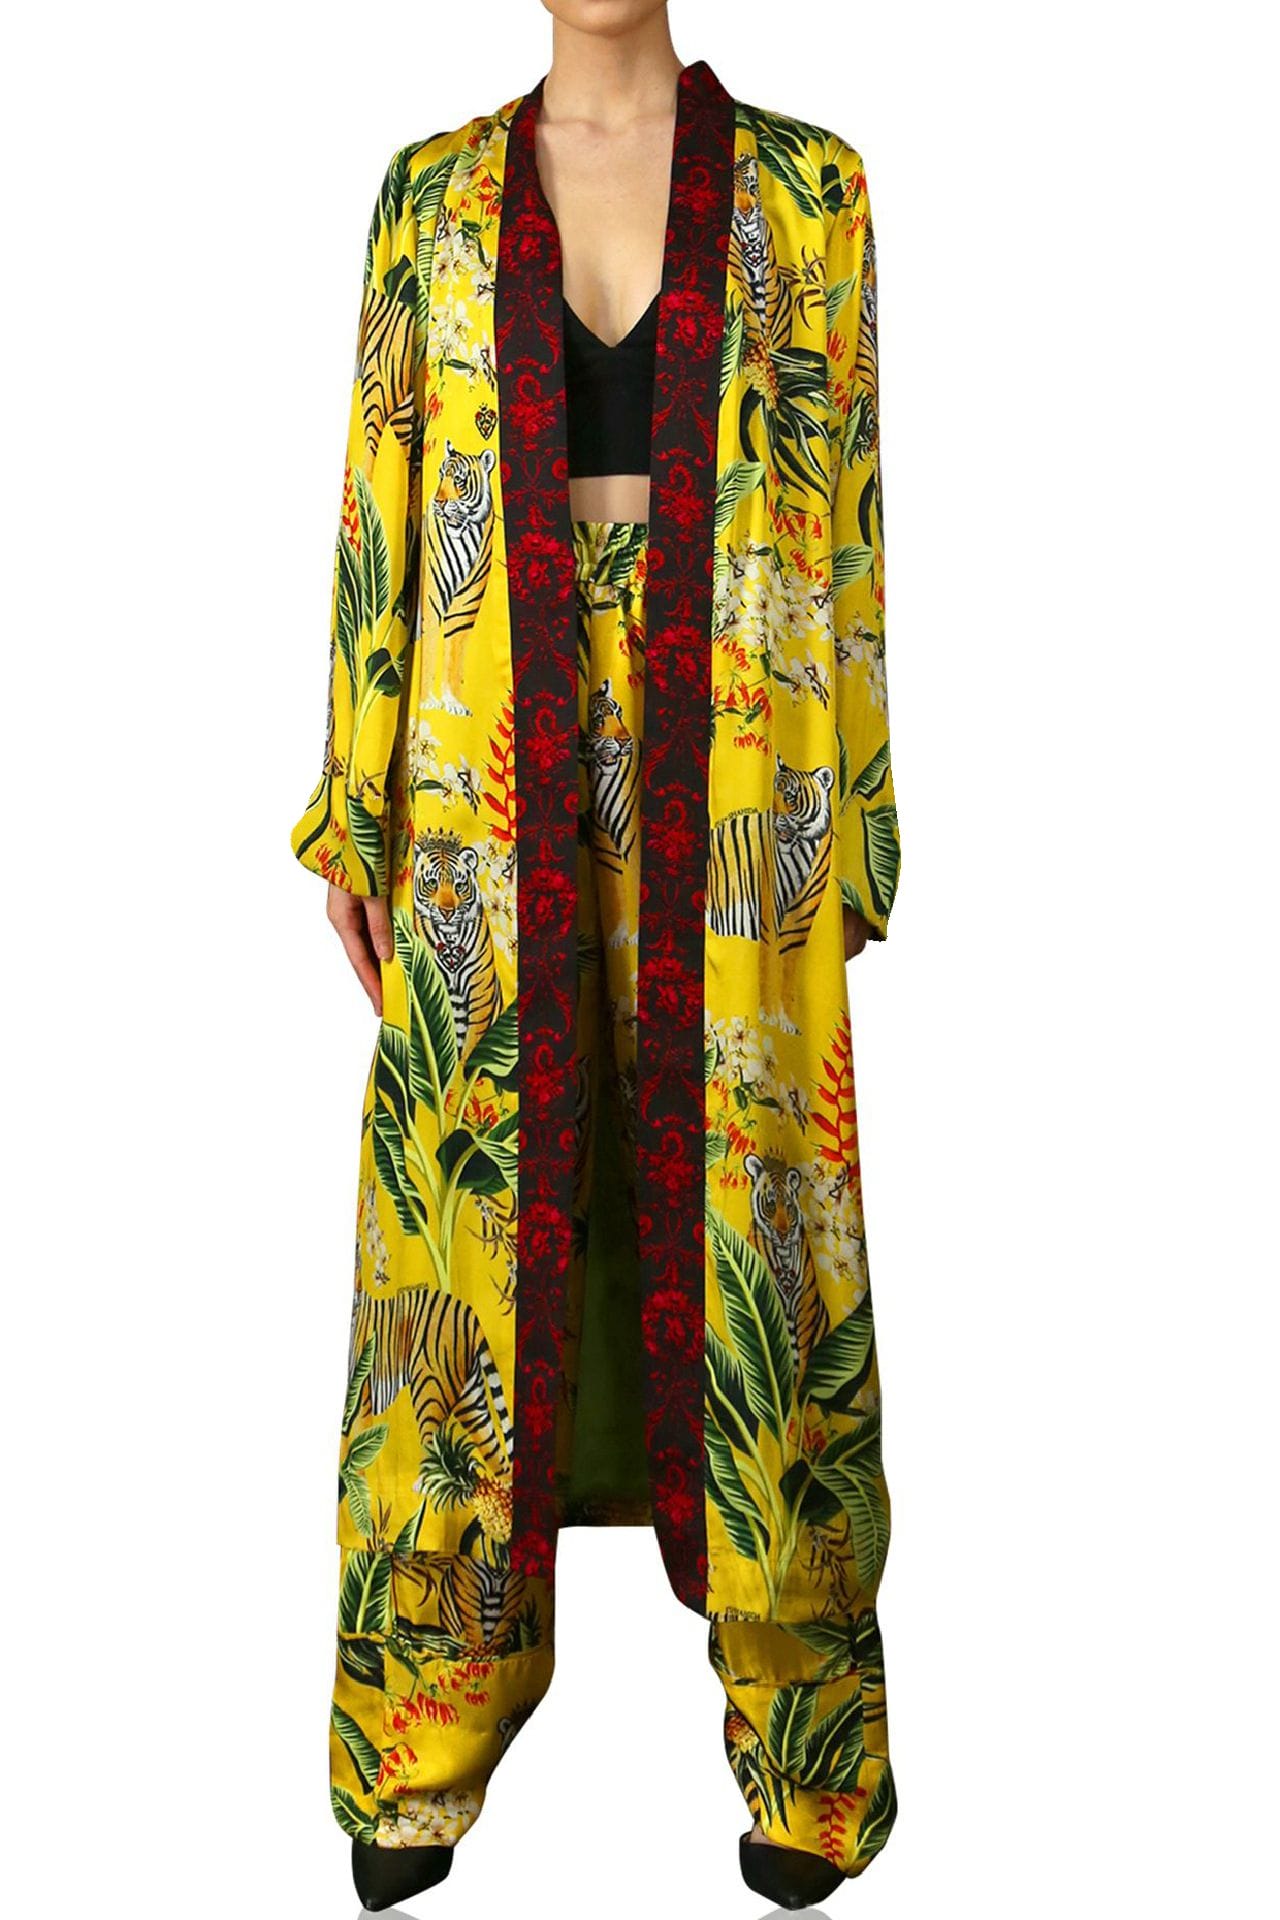 "Kyle X Shahida" "yellow silk kimono robe" "silk kimono for women"  "plus size long kimono" "womens floral robe" "sexy silk robe"